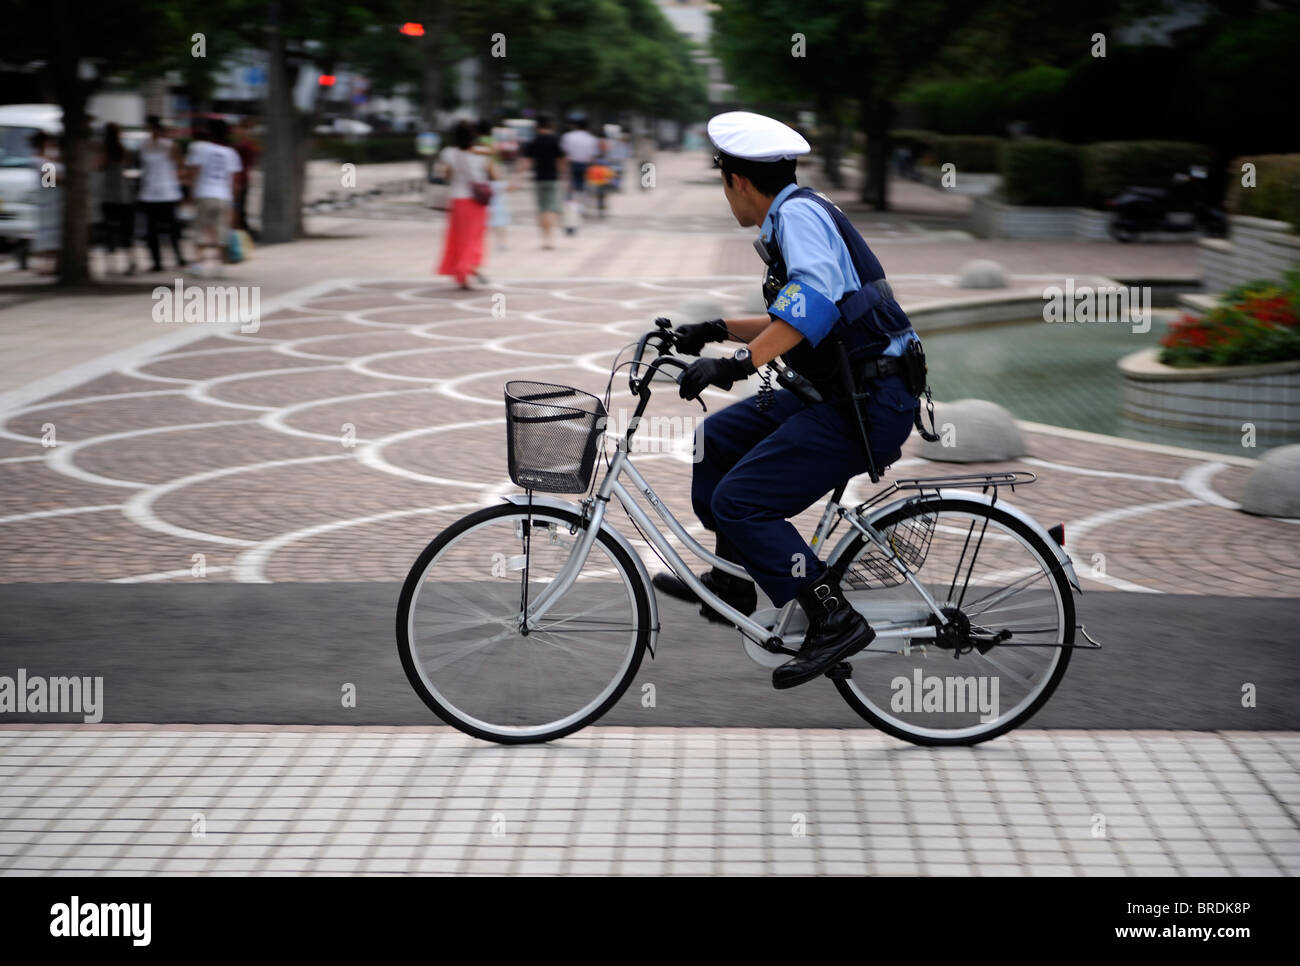 Una polizia giapponese pattuglie di uomo la strada con una bicicletta a Yokosuka, Giappone. 20-set-2010 Foto Stock